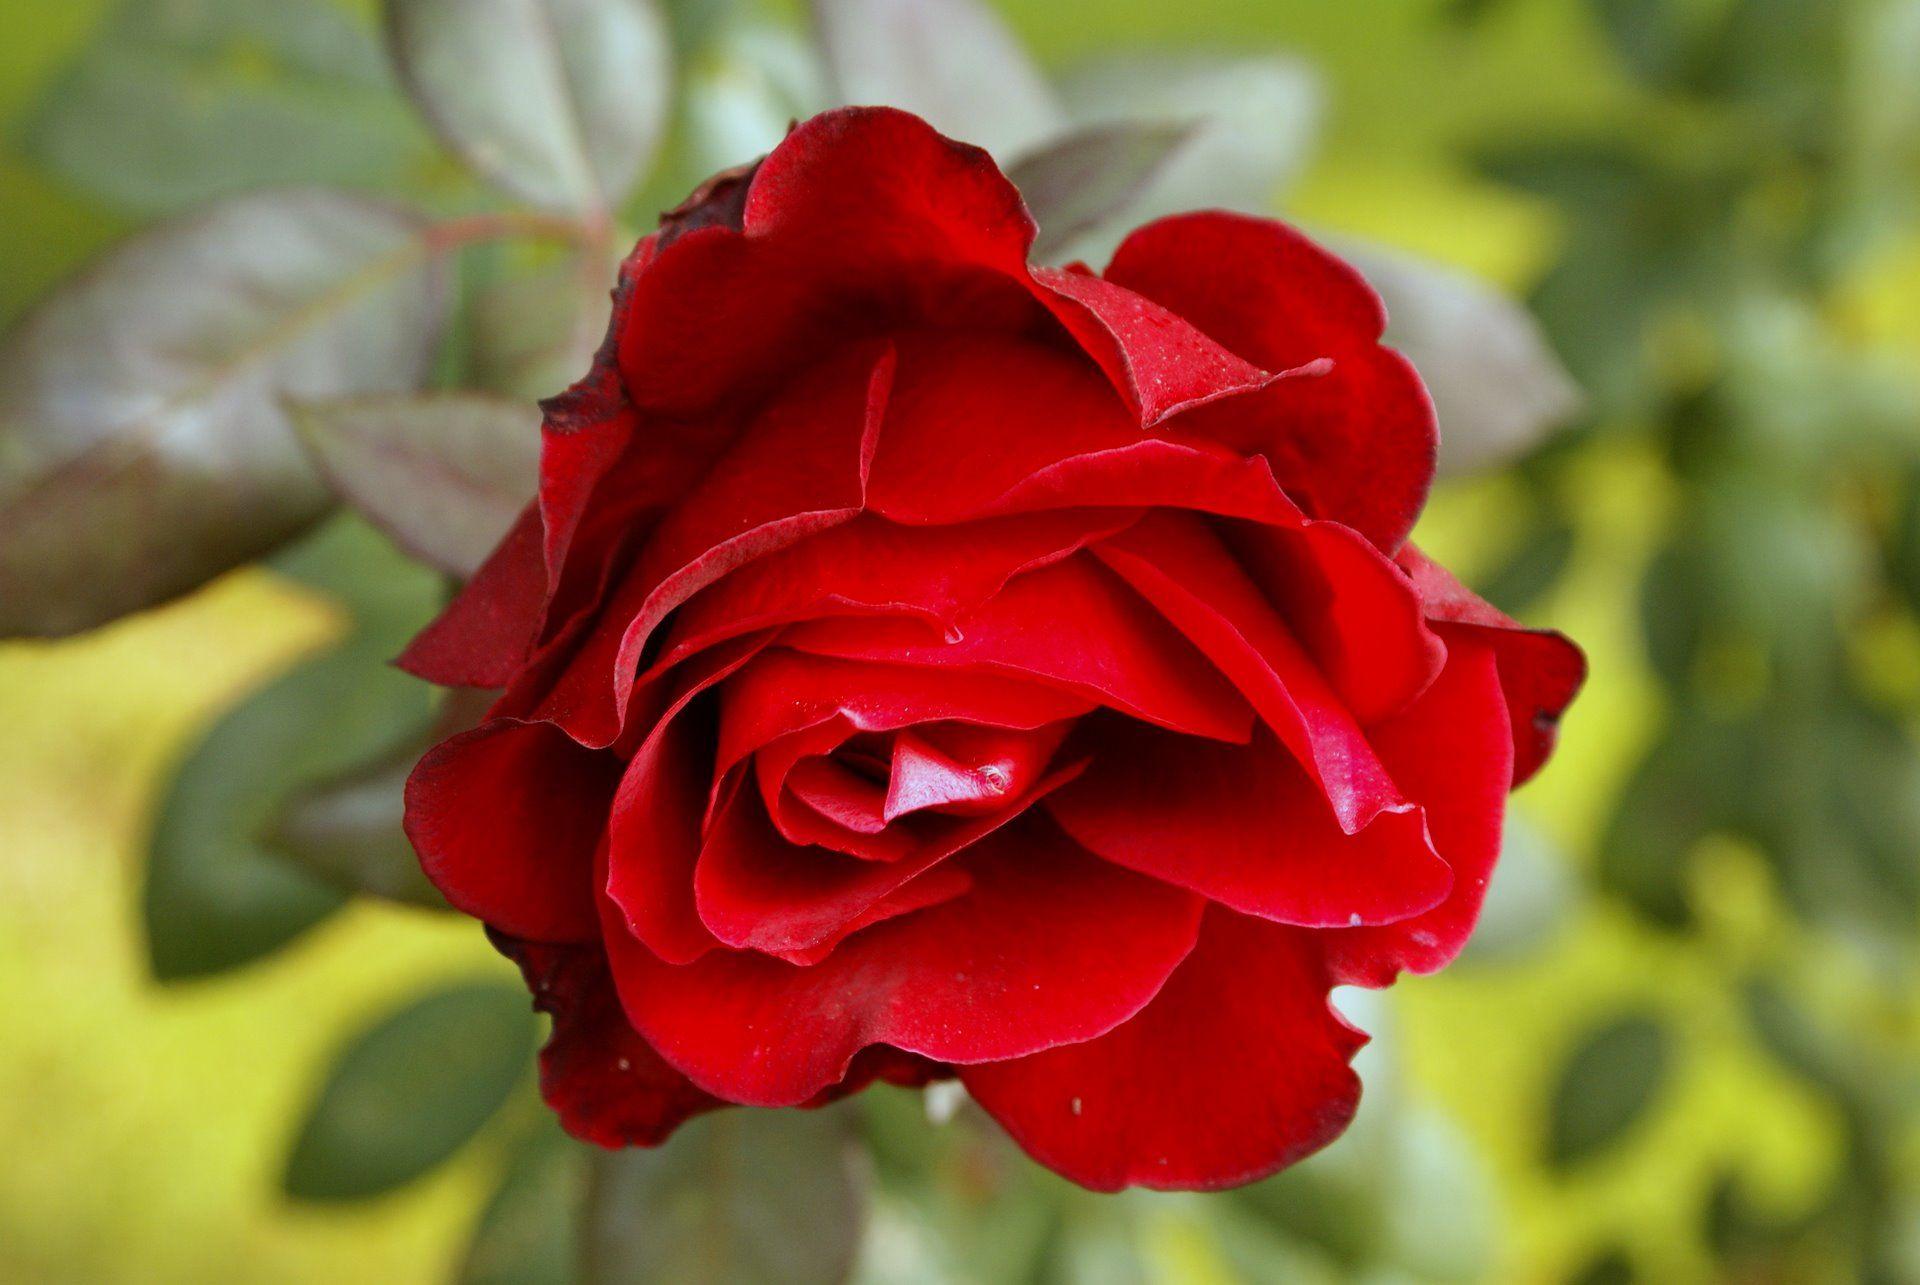 Flowers For > Red Rose Wallpaper For Desktop Full Size